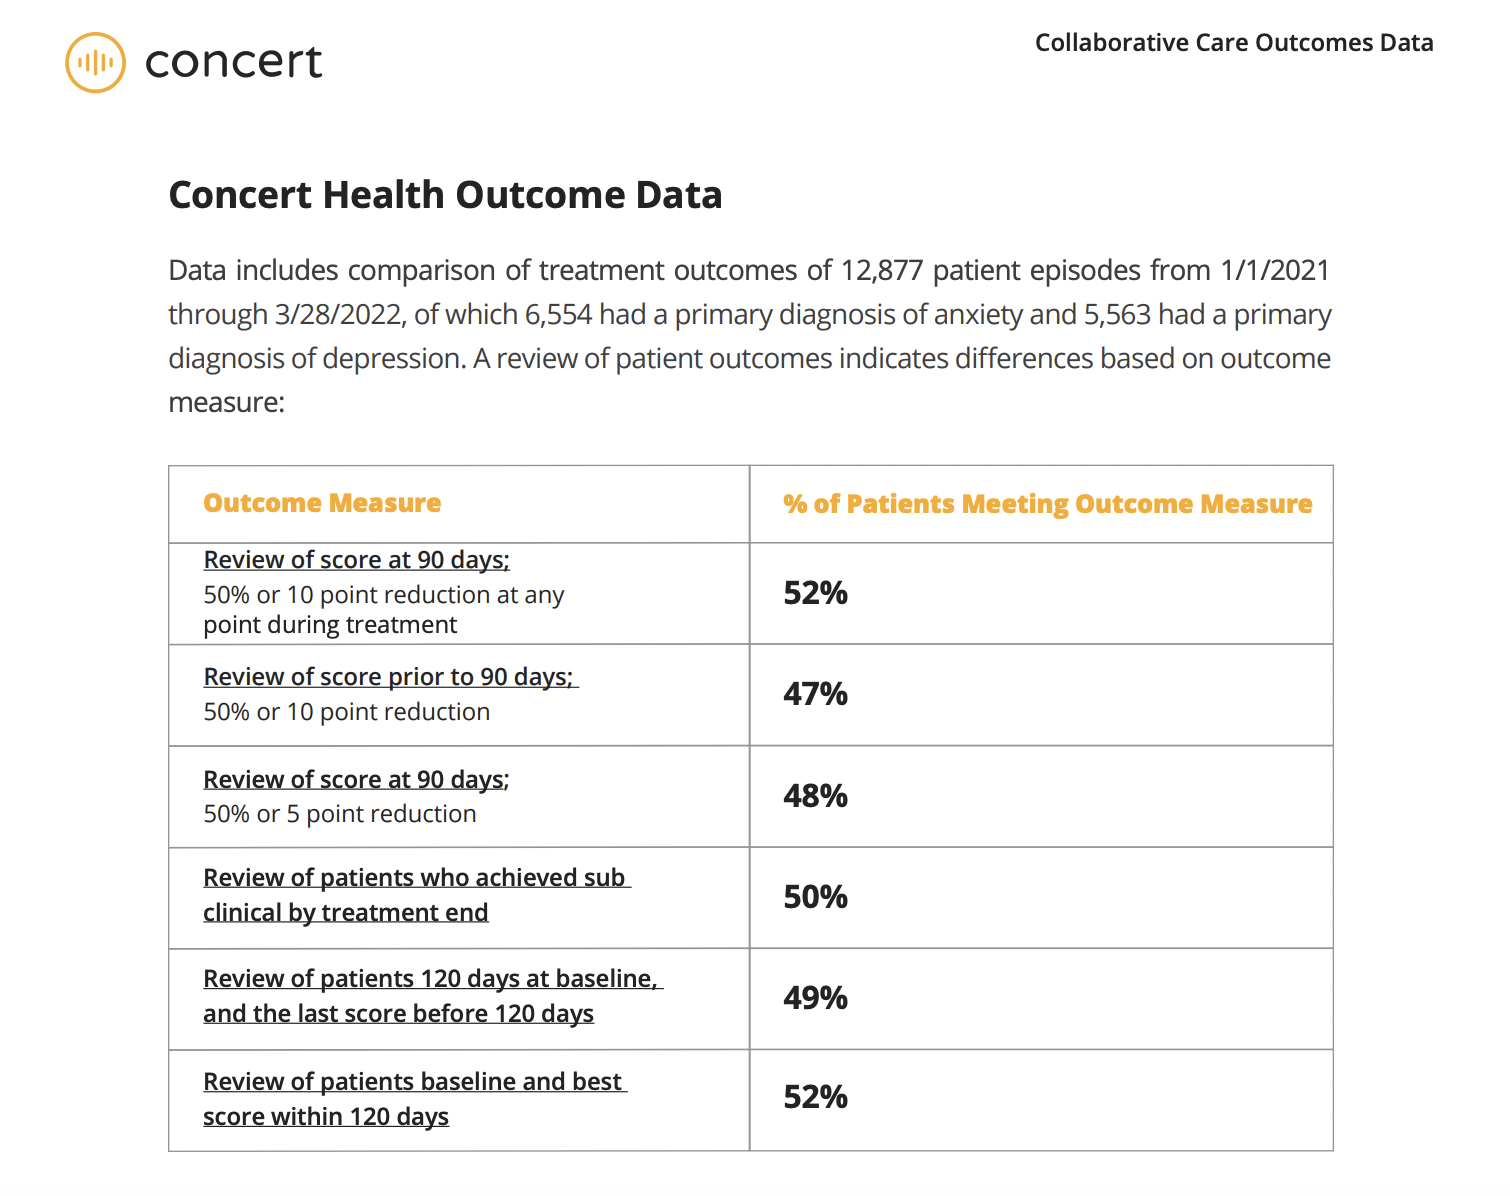 Raising the Bar: Collaborative Care Outcomes Data Report